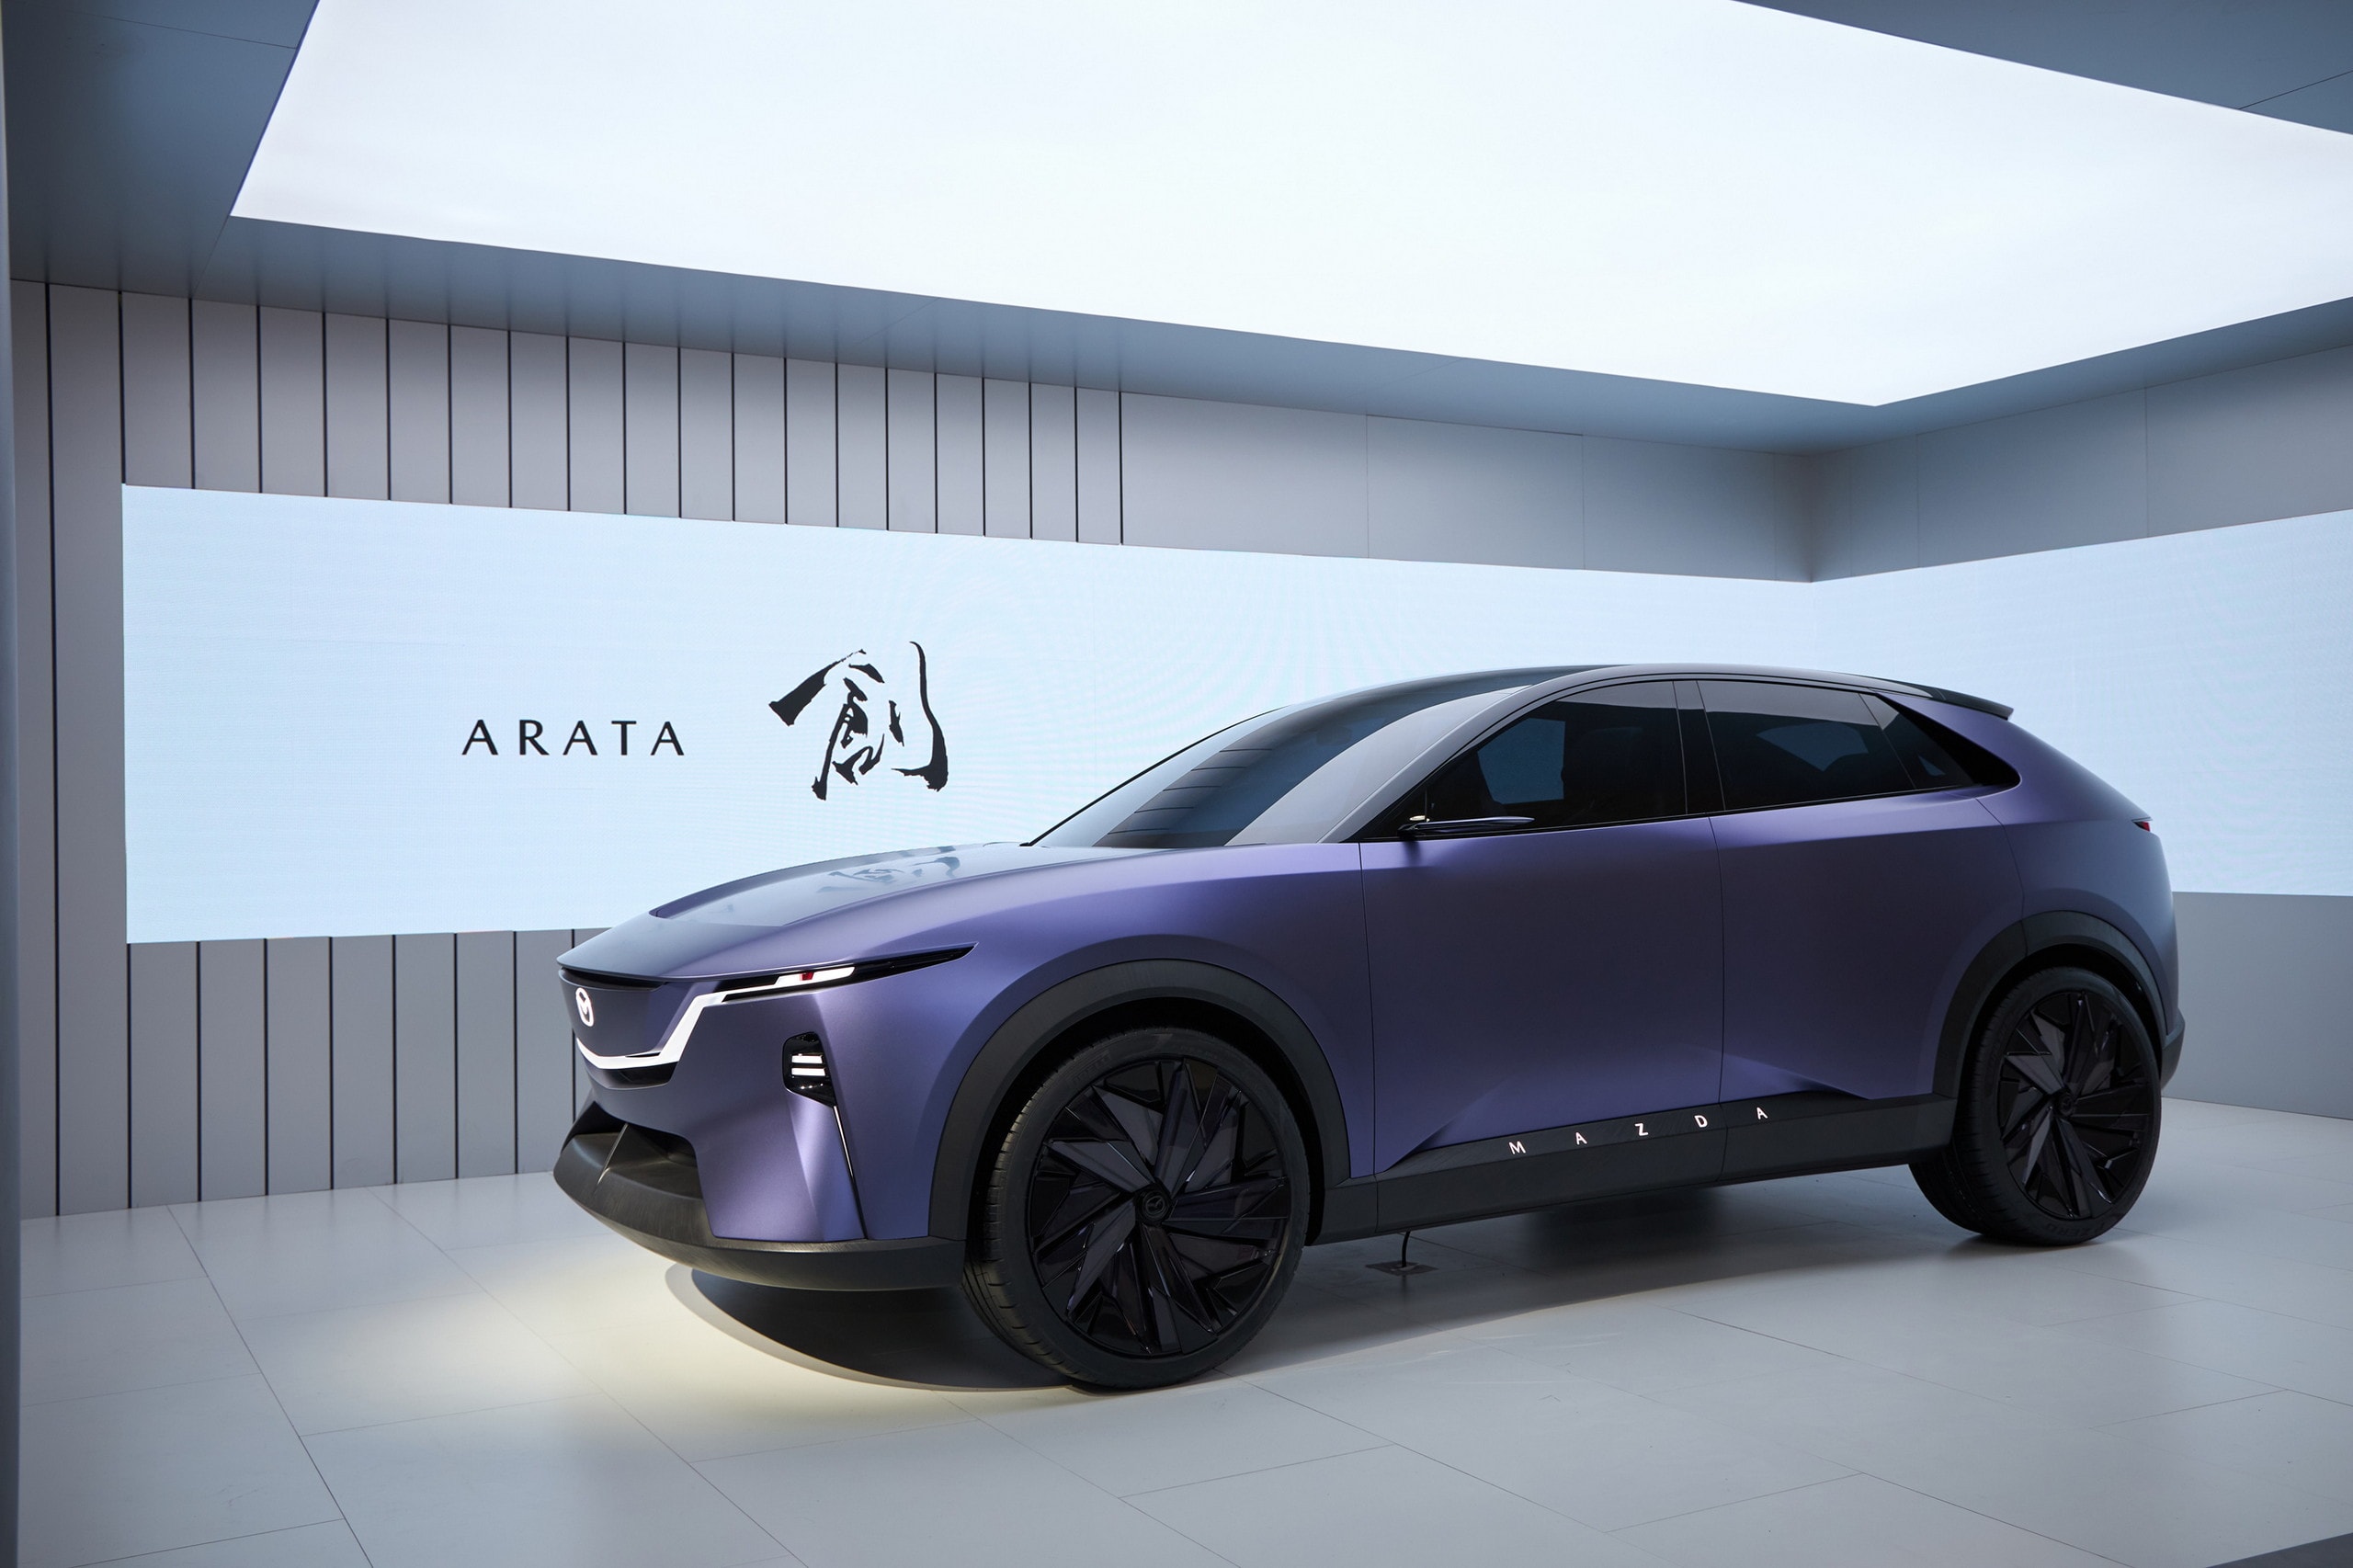 Mazda's Arata Concept